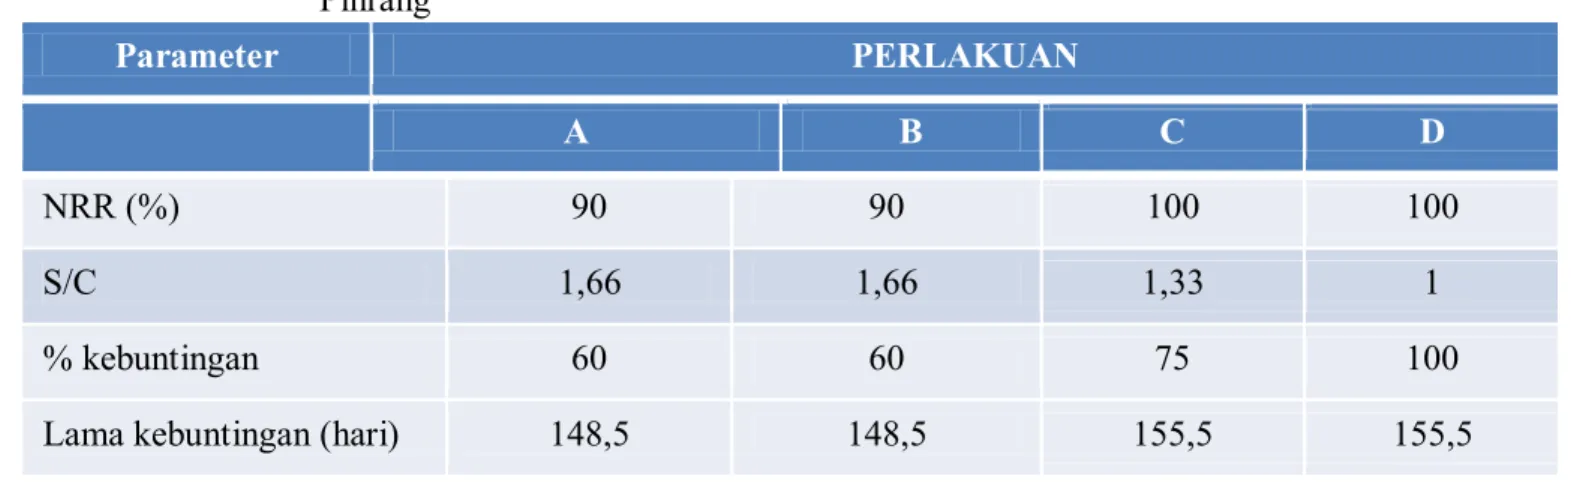 Tabel 4.   Kinerja reproduksi sapi potong induk di Desa Lau, Kec, Duampanua, Kab.  Pinrang Parameter   PERLAKUAN  A  B  C  D  NRR (%)   90  90   100  100  S/C   1,66  1,66  1,33  1  % kebuntingan  60  60  75  100 